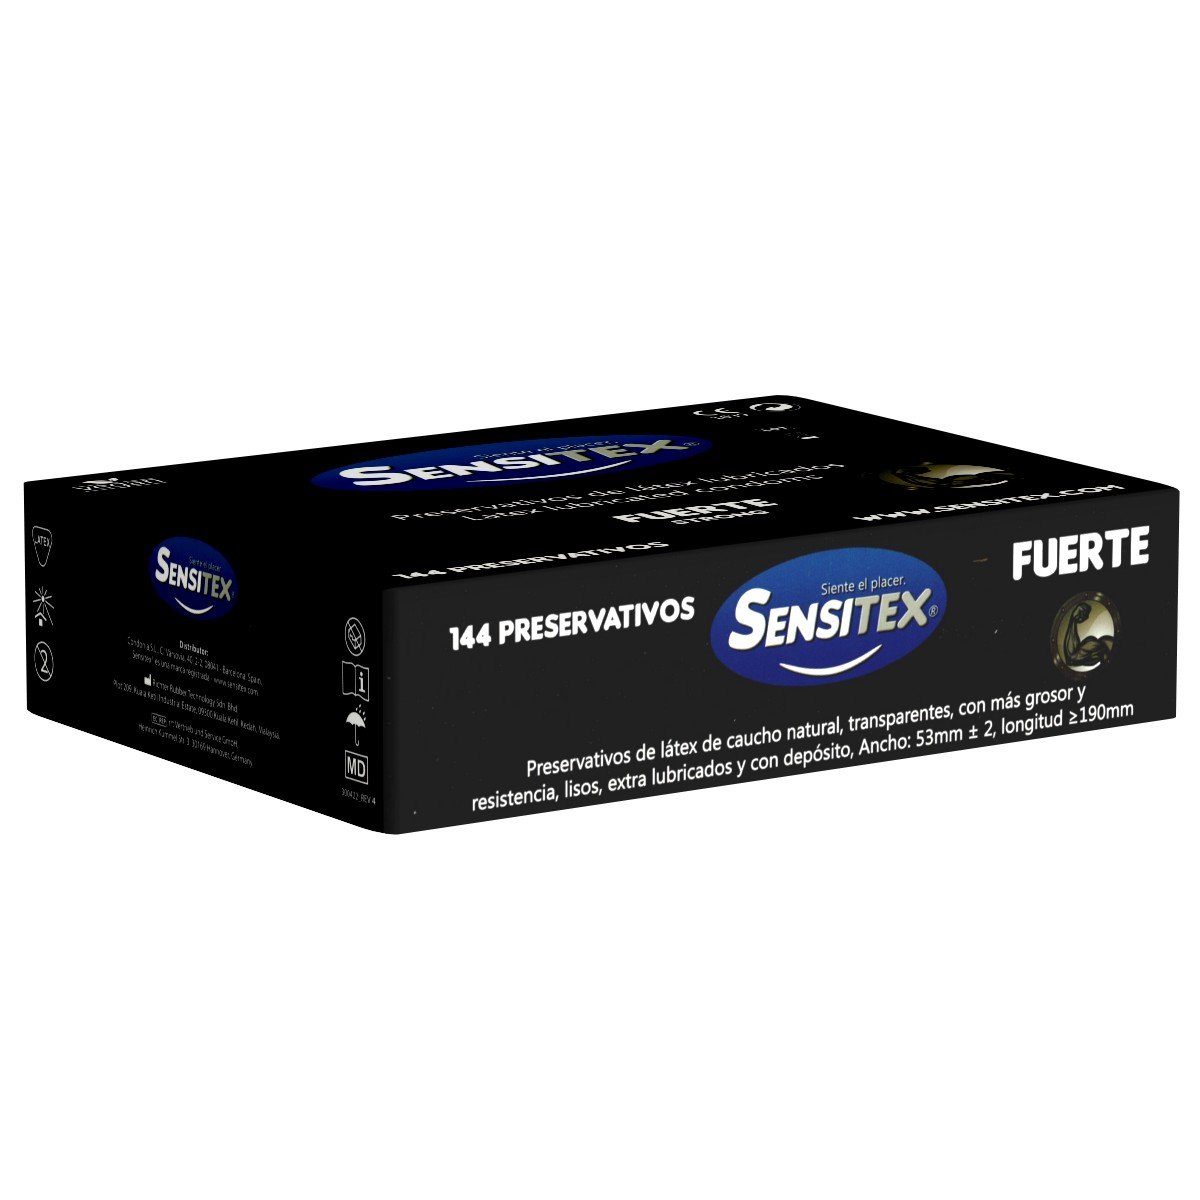 Sensitex Kondome Extra Fuerte (Strong) Packung mit, 144 St., Vorratsbox, extra starke und vegane Kondome aus Spanien